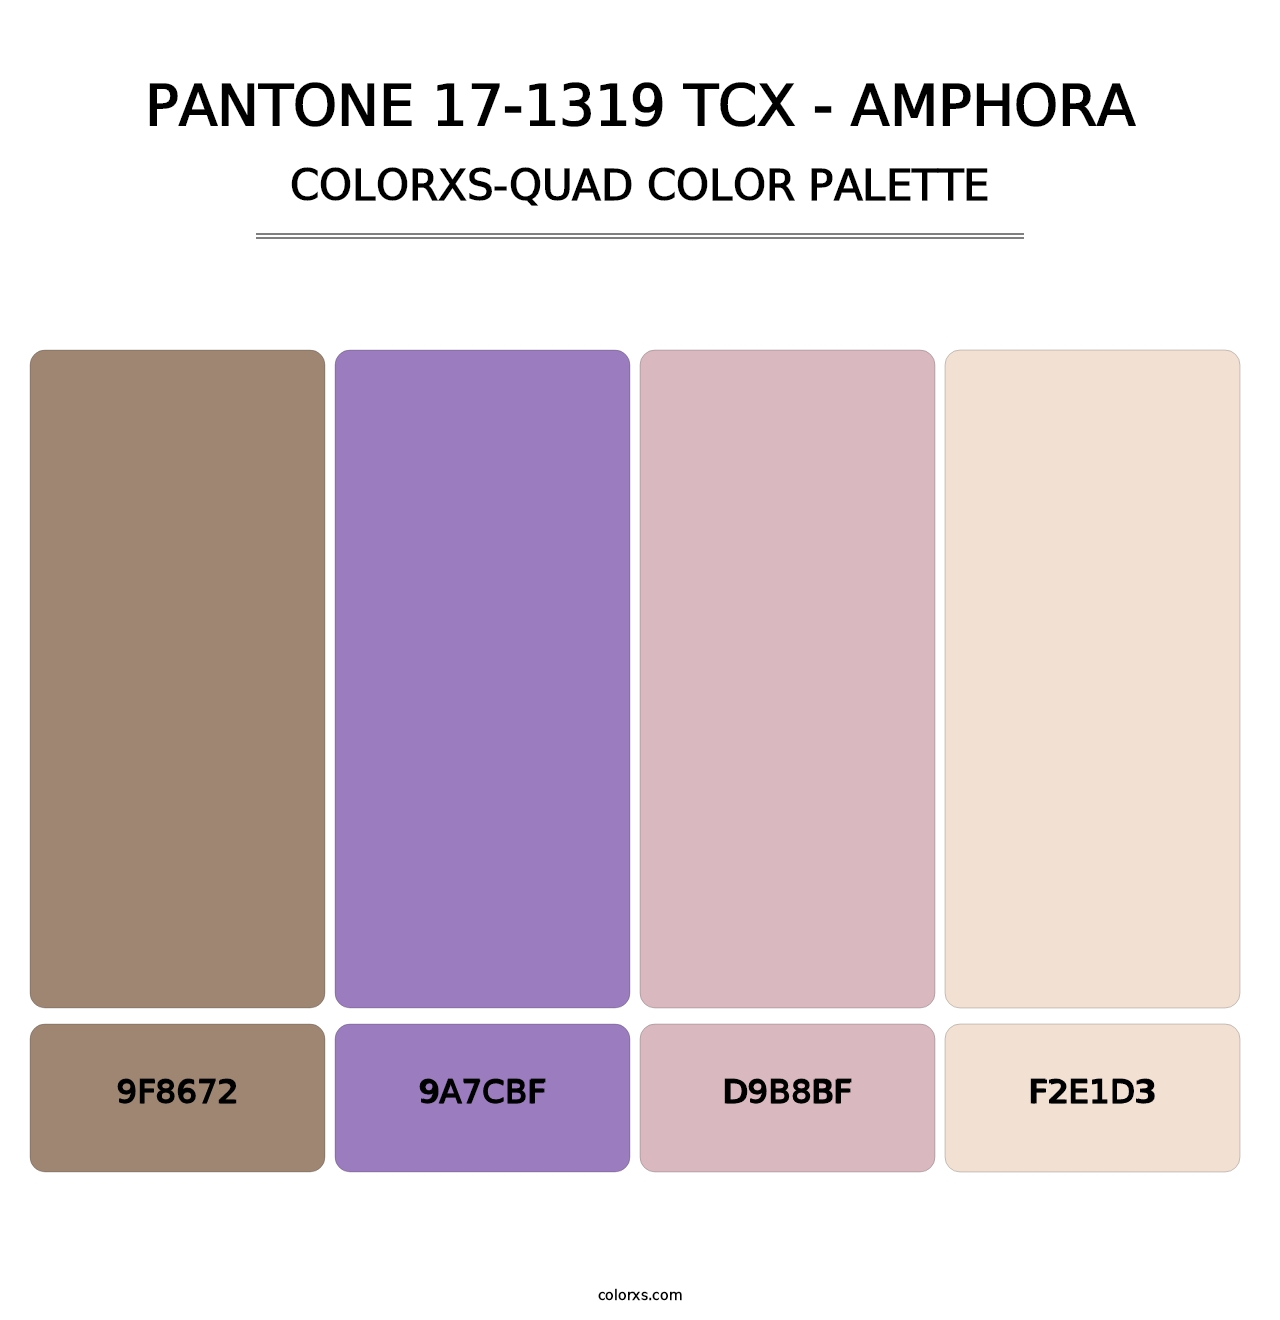 PANTONE 17-1319 TCX - Amphora - Colorxs Quad Palette